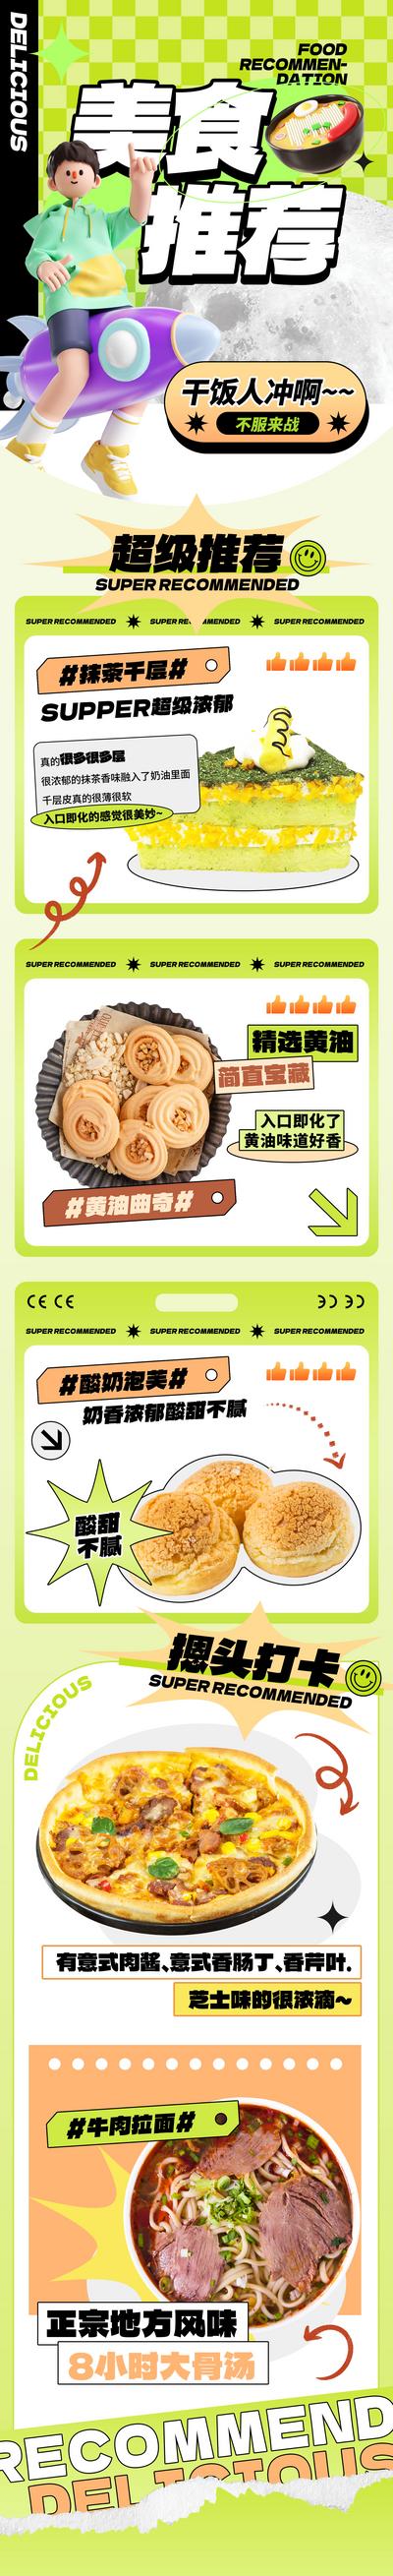 南门网 海报 长图 商场 餐饮 美食 新品上新 美食 推荐